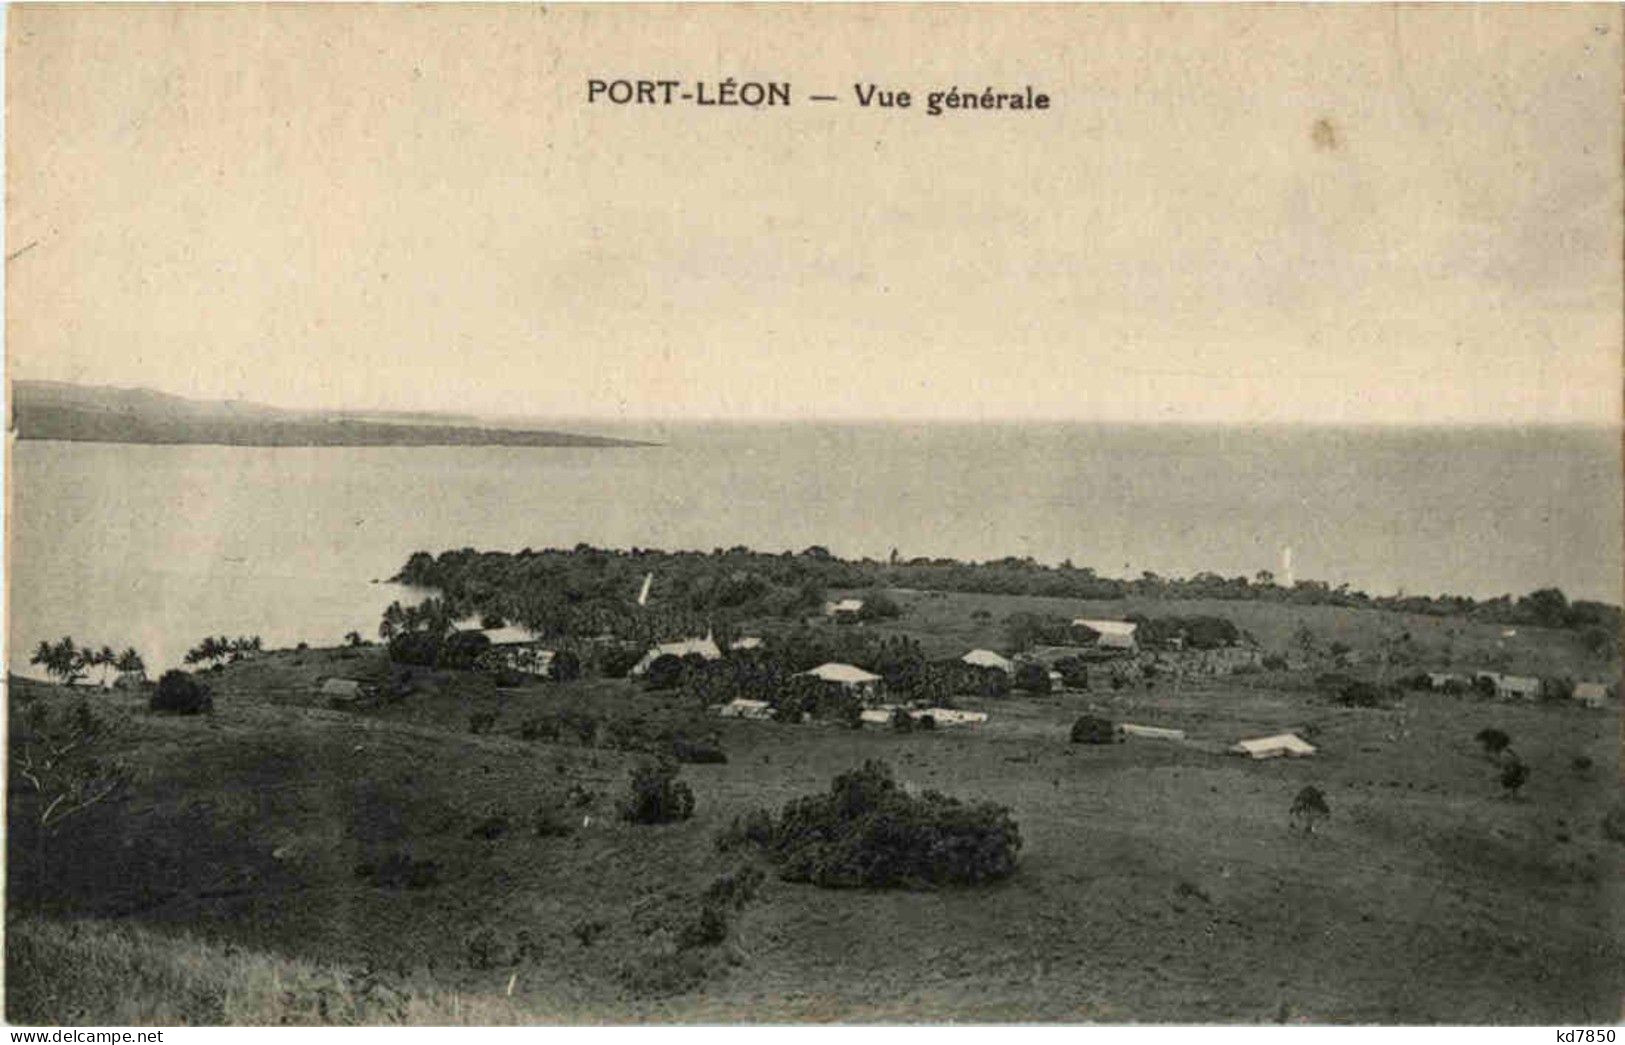 Port Leon - Papouasie-Nouvelle-Guinée